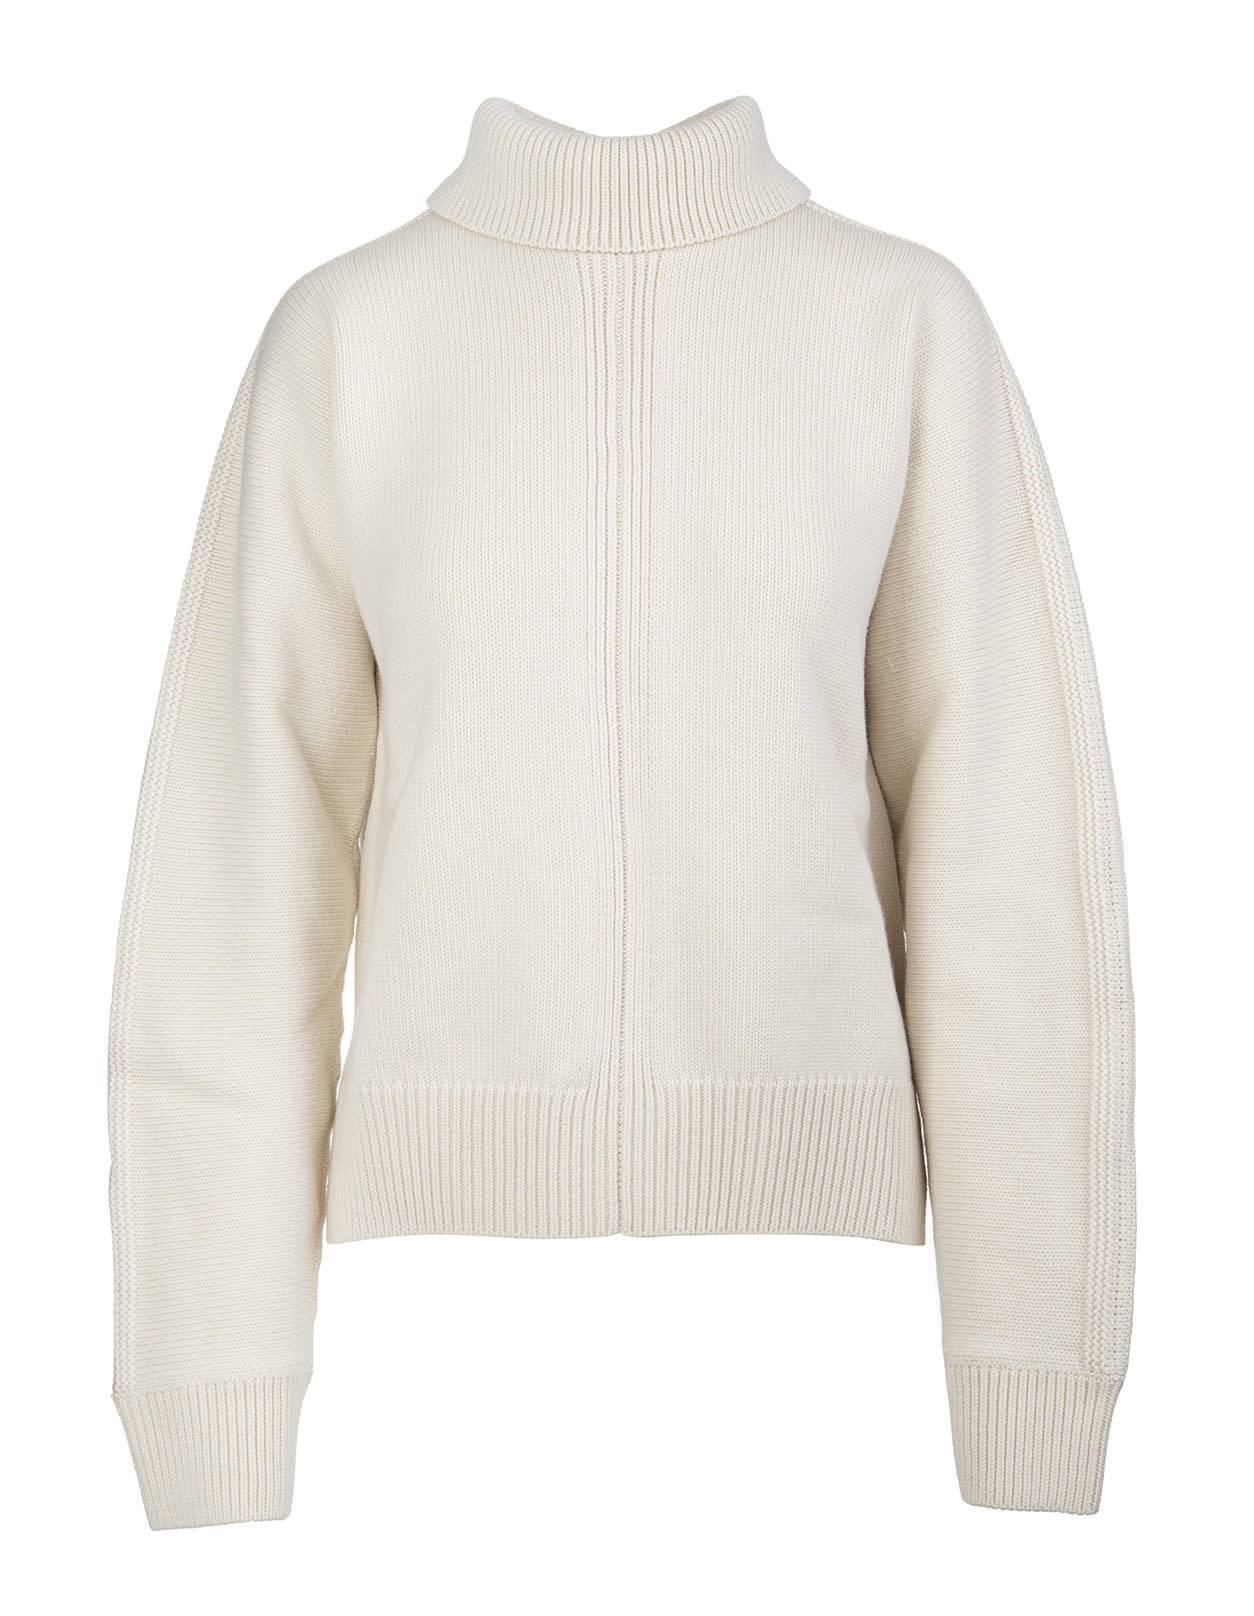 Jil Sander Ivory Sweater With Back Slit